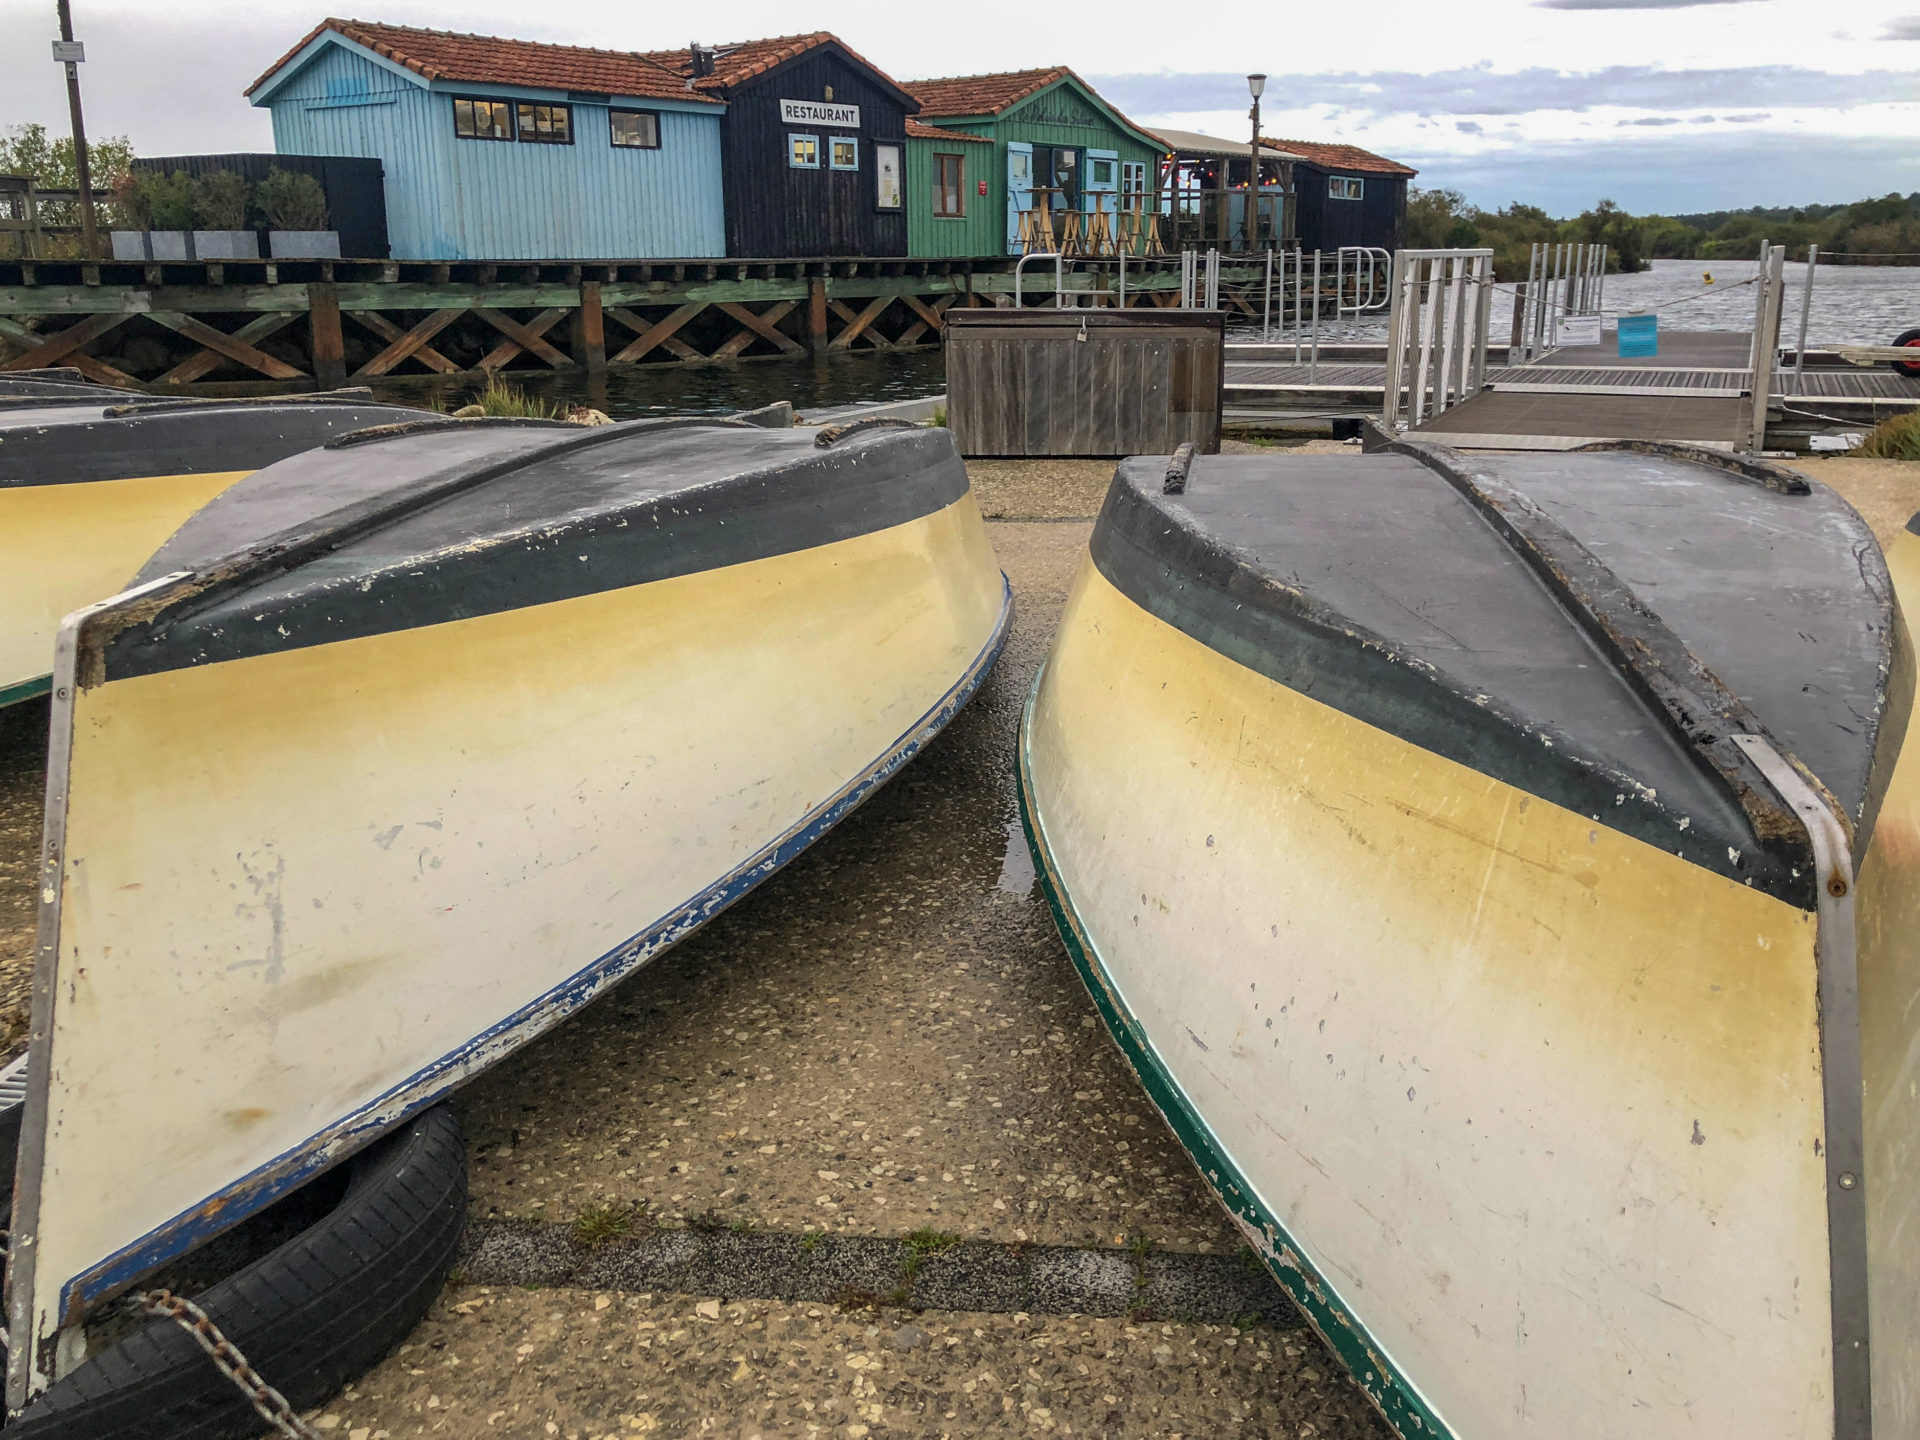 Umgedrehte Boote vor dem Restaurant Relais des Salines auf der Île d'Oleron an der französischen Atlantikküste